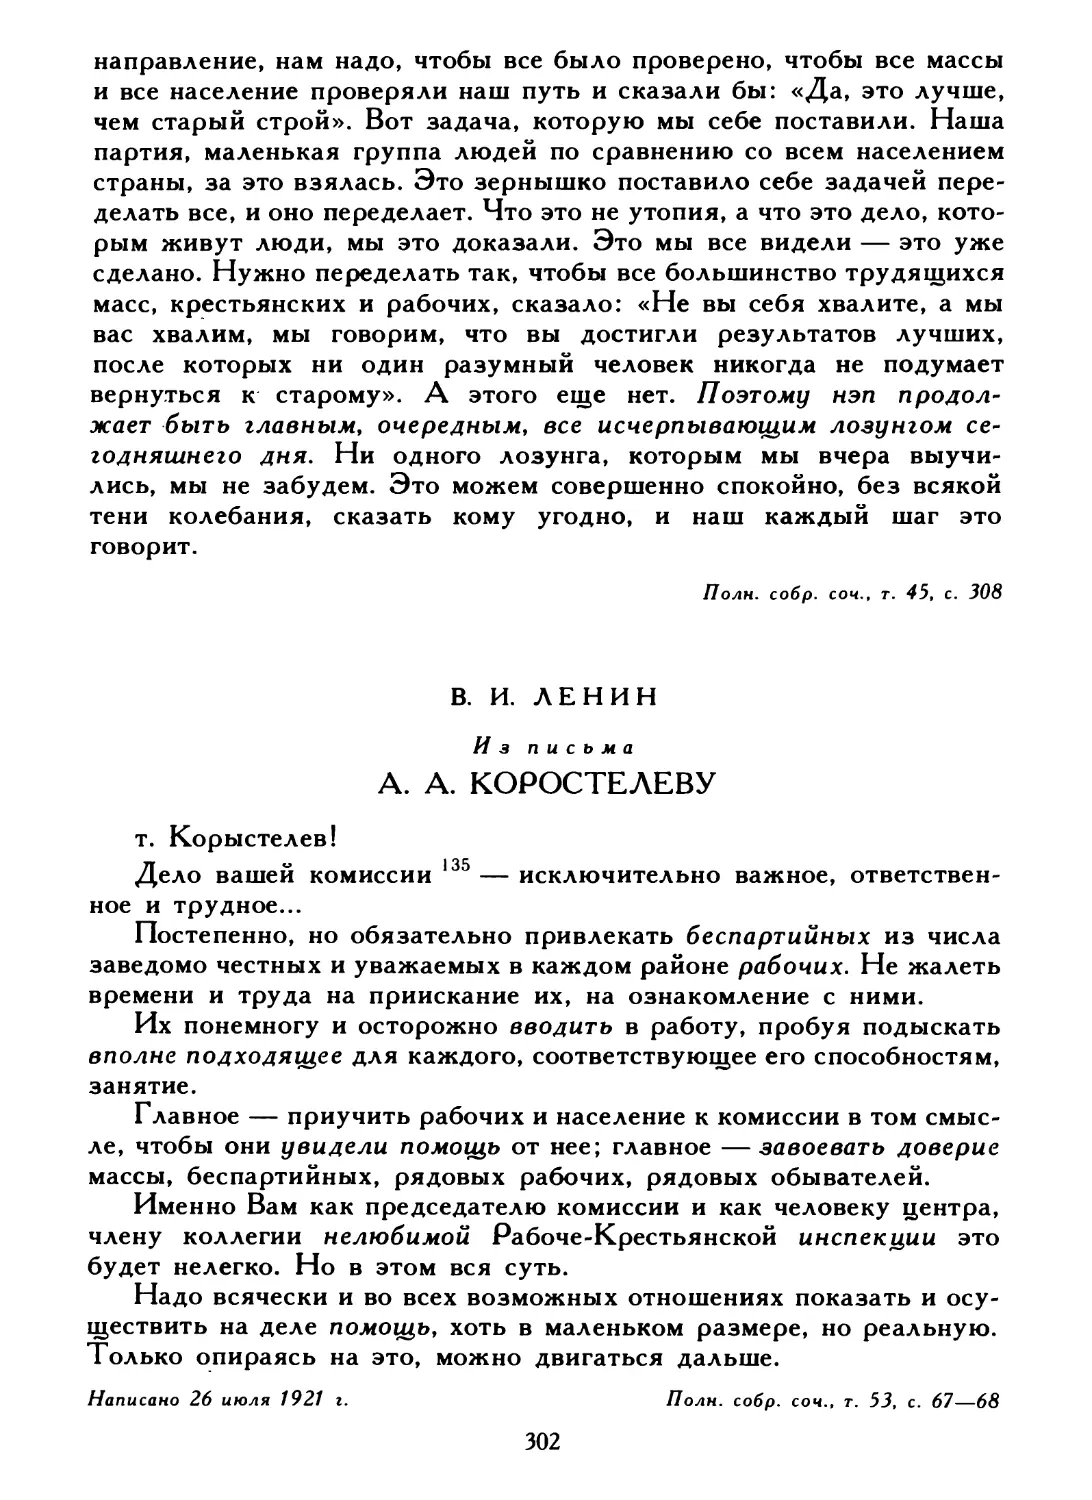 В. И. Ленин. Из письма А. А. Коростелеву, 26 июля 1921 г.